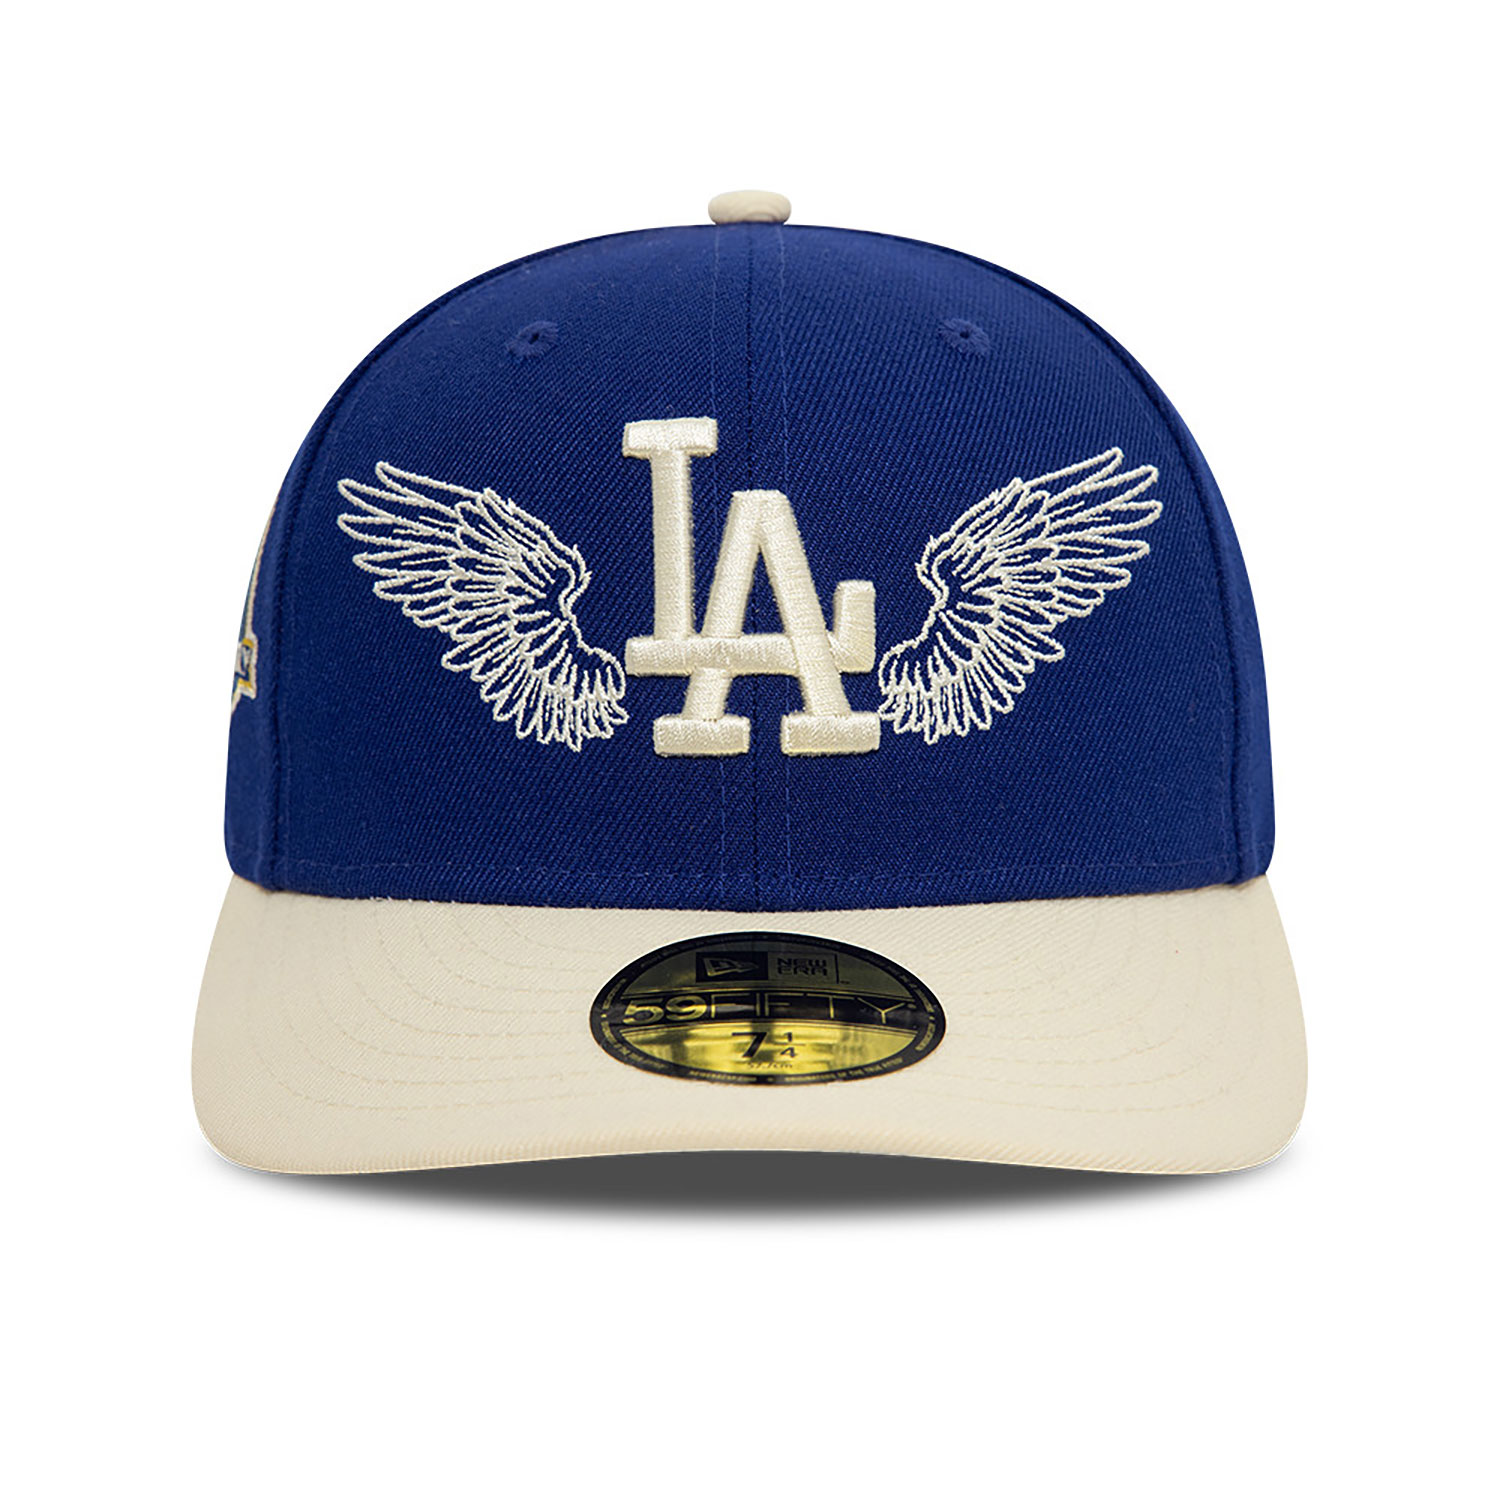 Team Wings LA Dodgers 59FIFTY Fitted Cap | New Era Cap PL